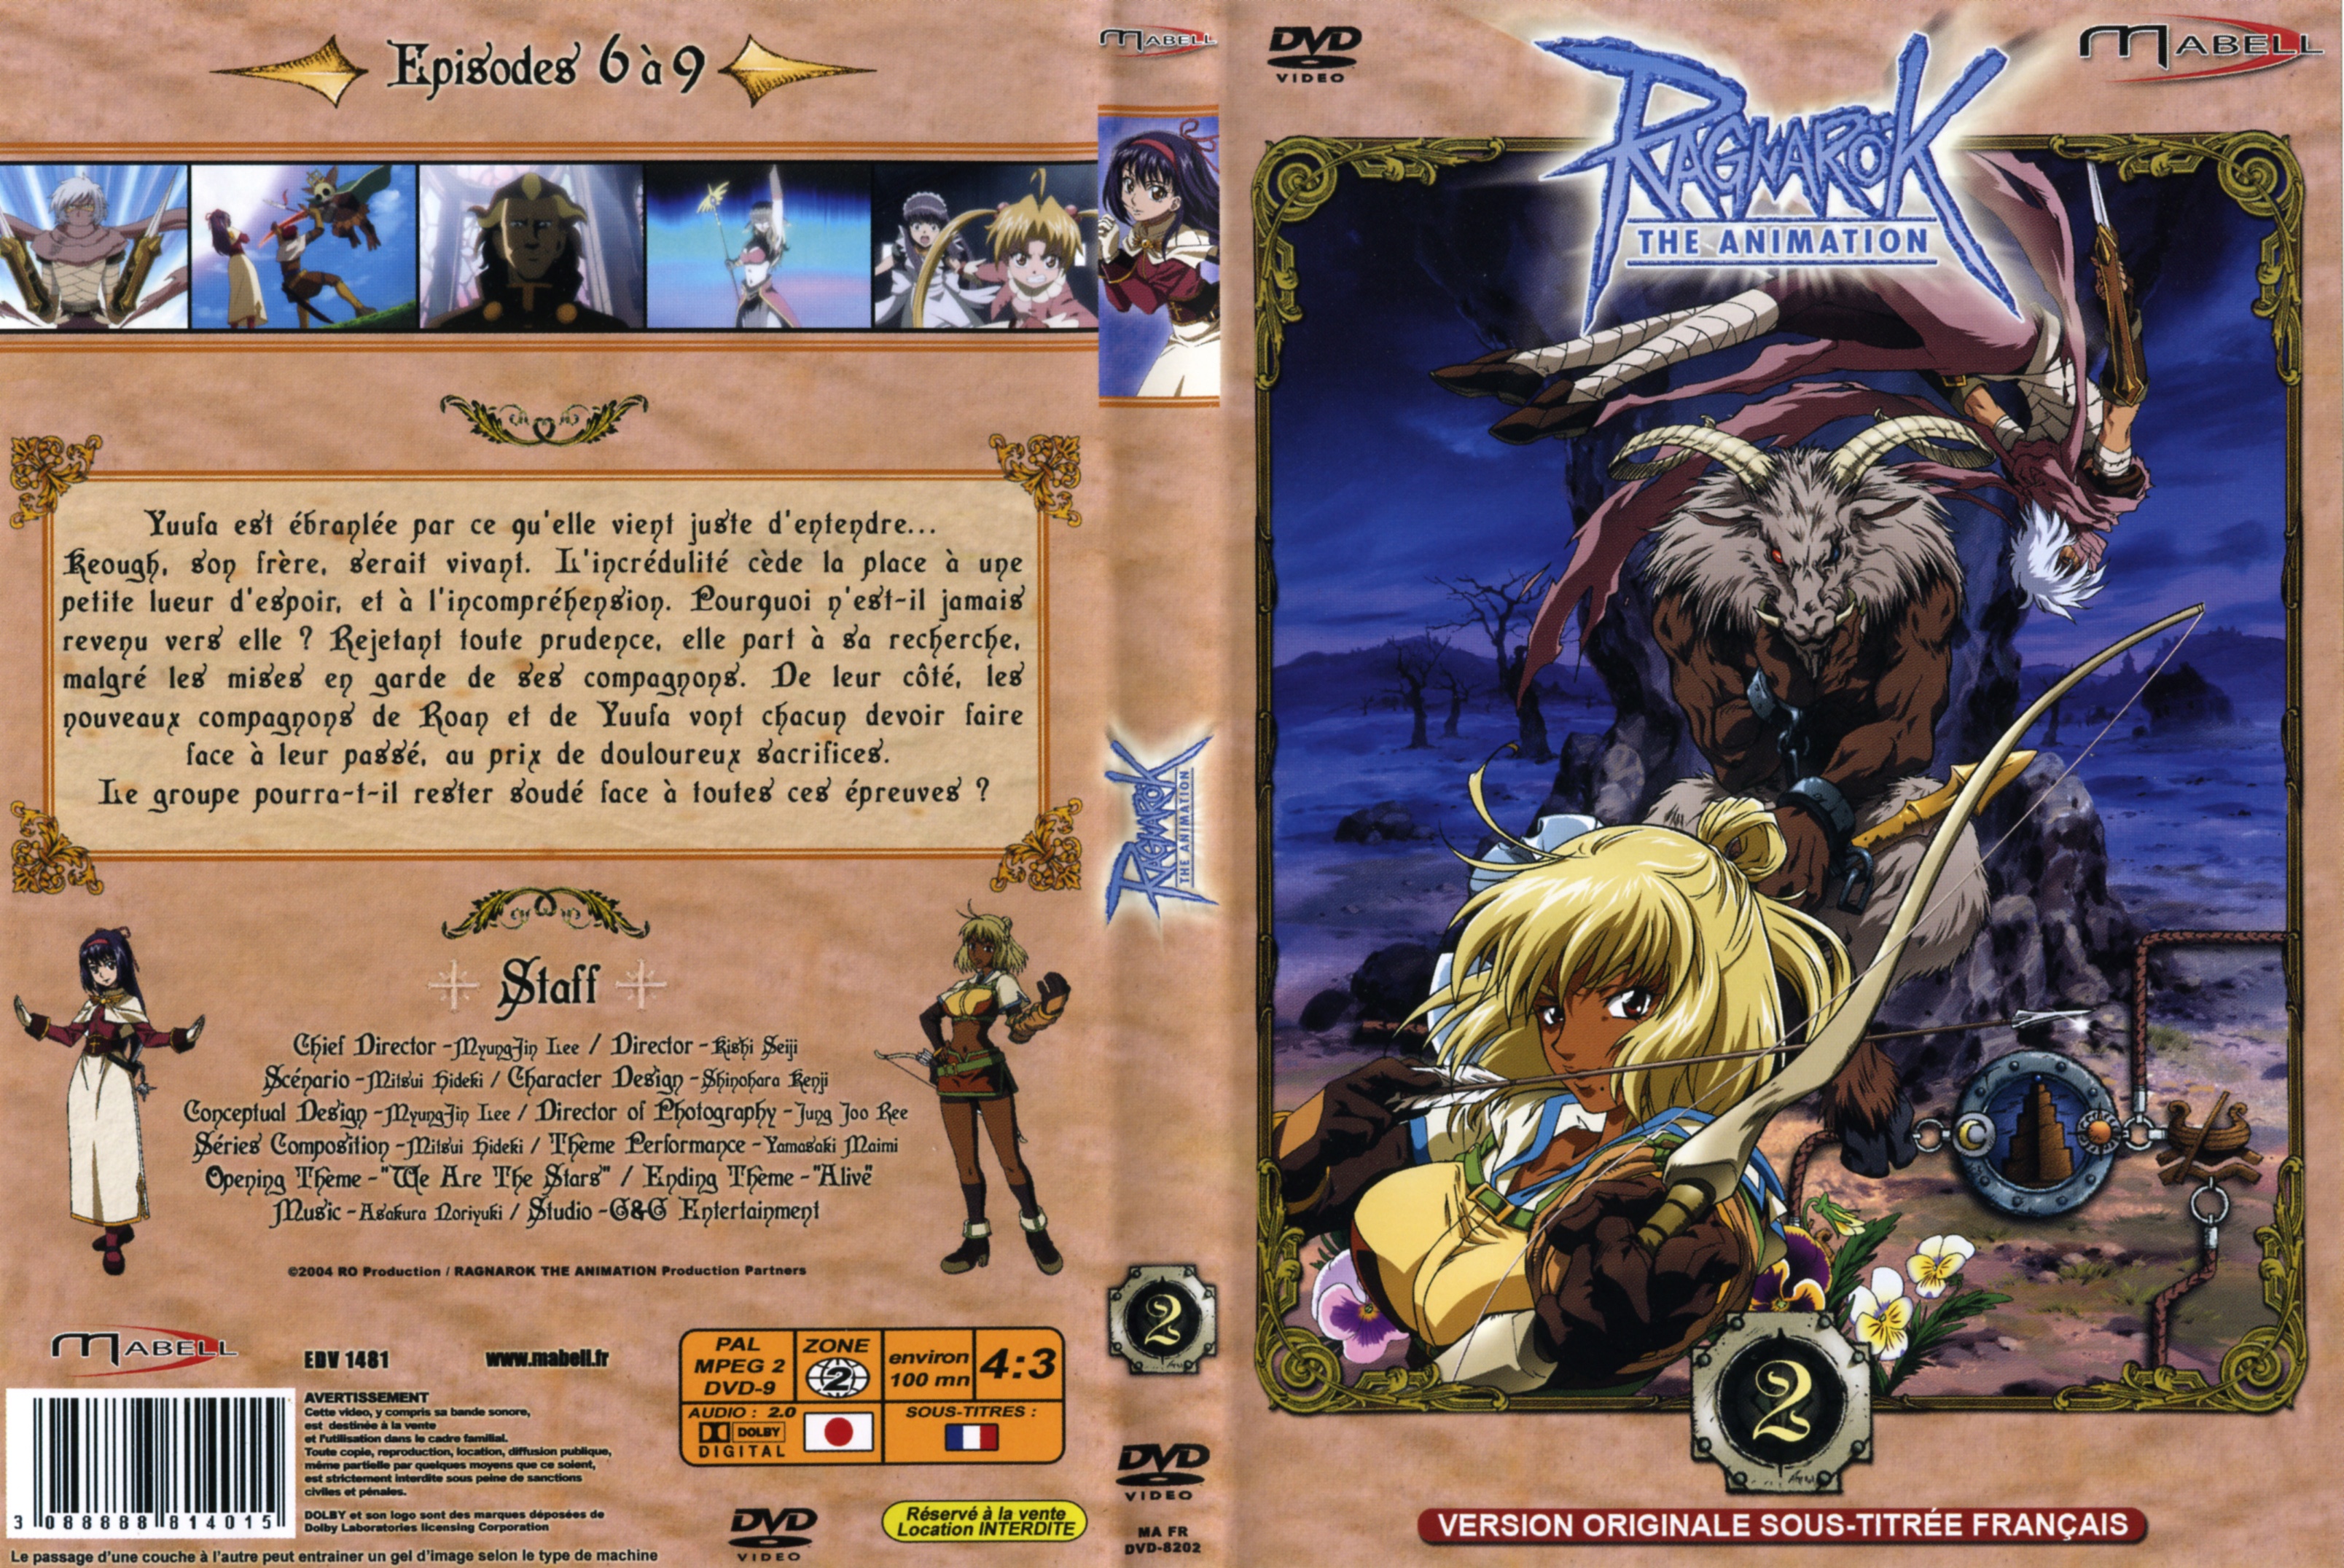 Jaquette DVD Ragnarok vol 2